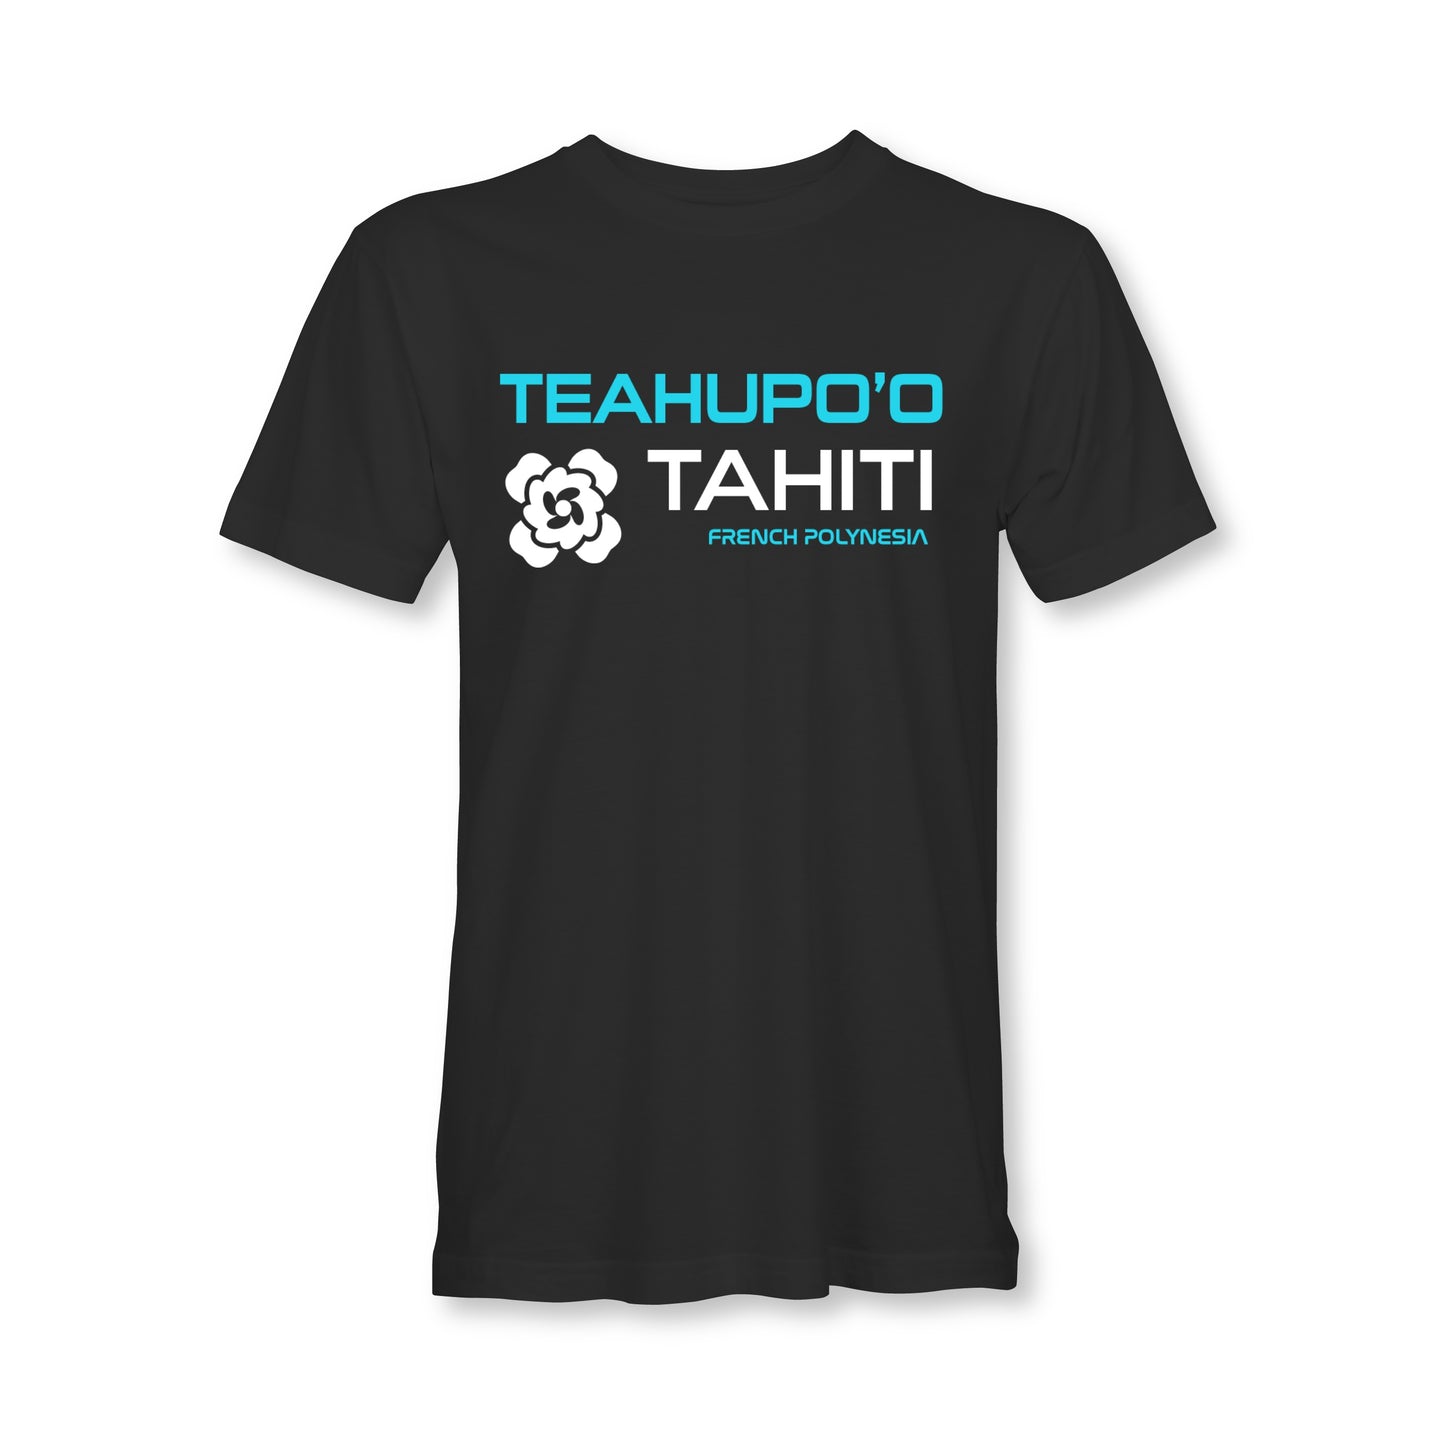 Teahupo'o Tahiti surf- t-shirt